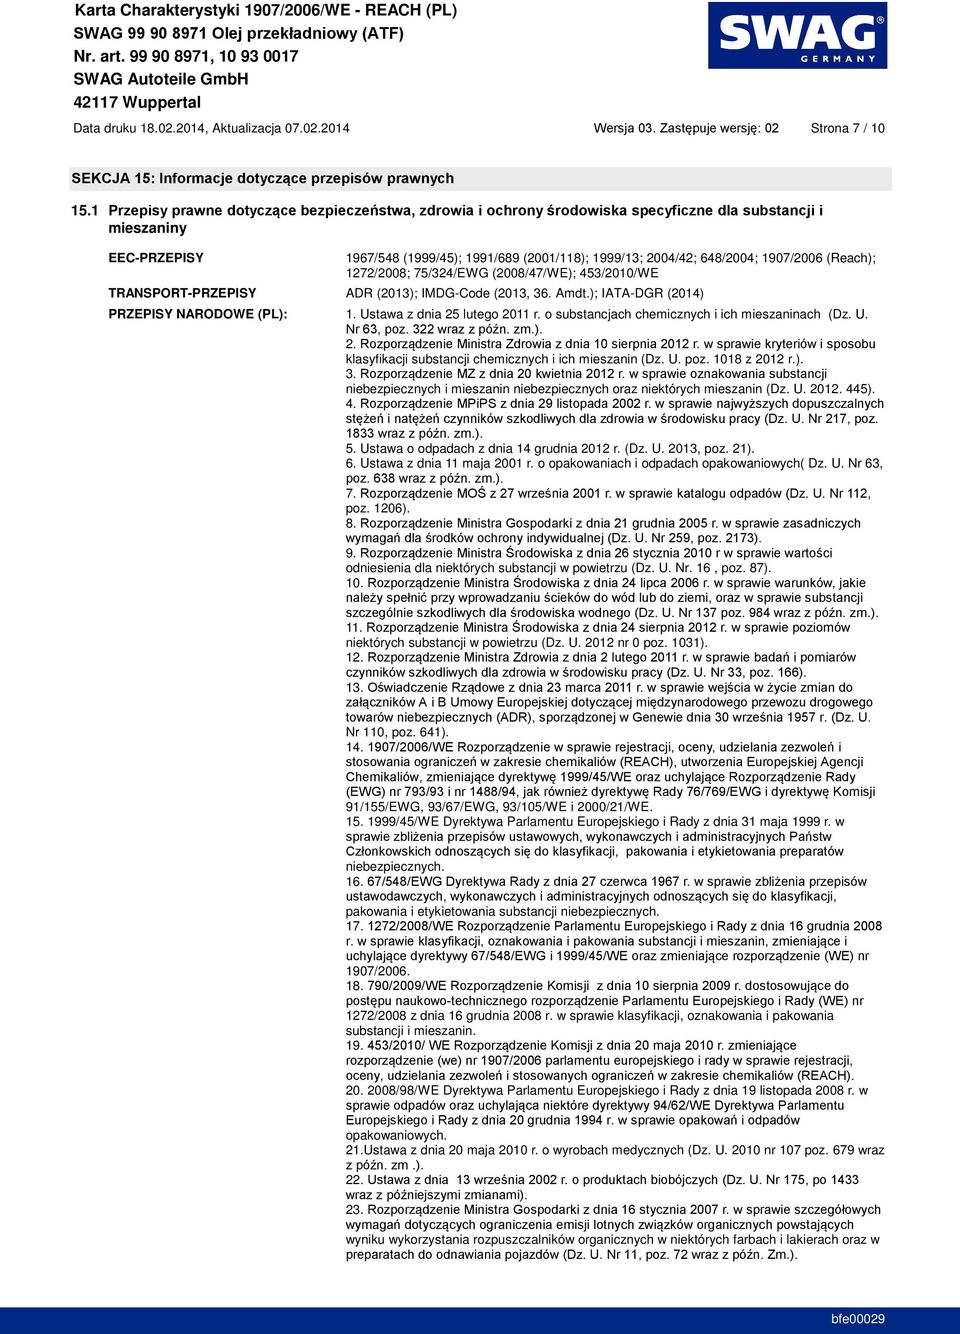 IMDG-Code (2013, 36. Amdt.); IATA-DGR (2014) PRZEPISY NARODOWE (PL): 1. Ustawa z dnia 25 lutego 2011 r. o substancjach chemicznych i ich mieszaninach (Dz. U. 2. klasyfikacji substancji chemicznych i ich mieszanin (Dz.